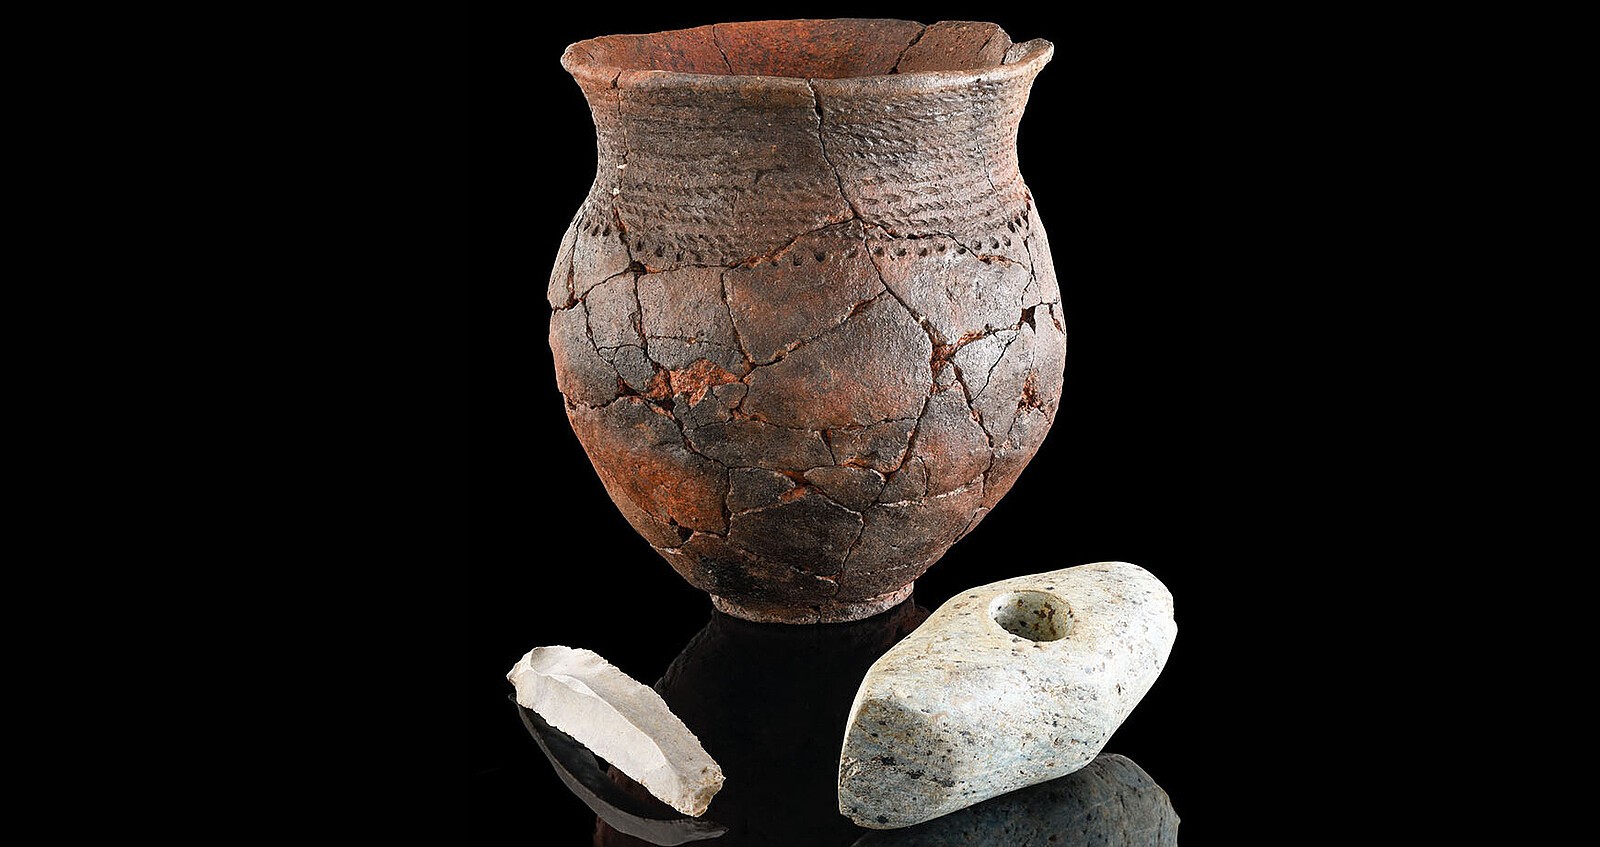 Pote de cerâmica, machado de pedra e lâmina de sílex de um túmulo da Idade da Pedra encontrado na Alemanha (Foto: Secretaria Estadual de Preservação de Monumentos do RPS / Yvonne Mühleis)